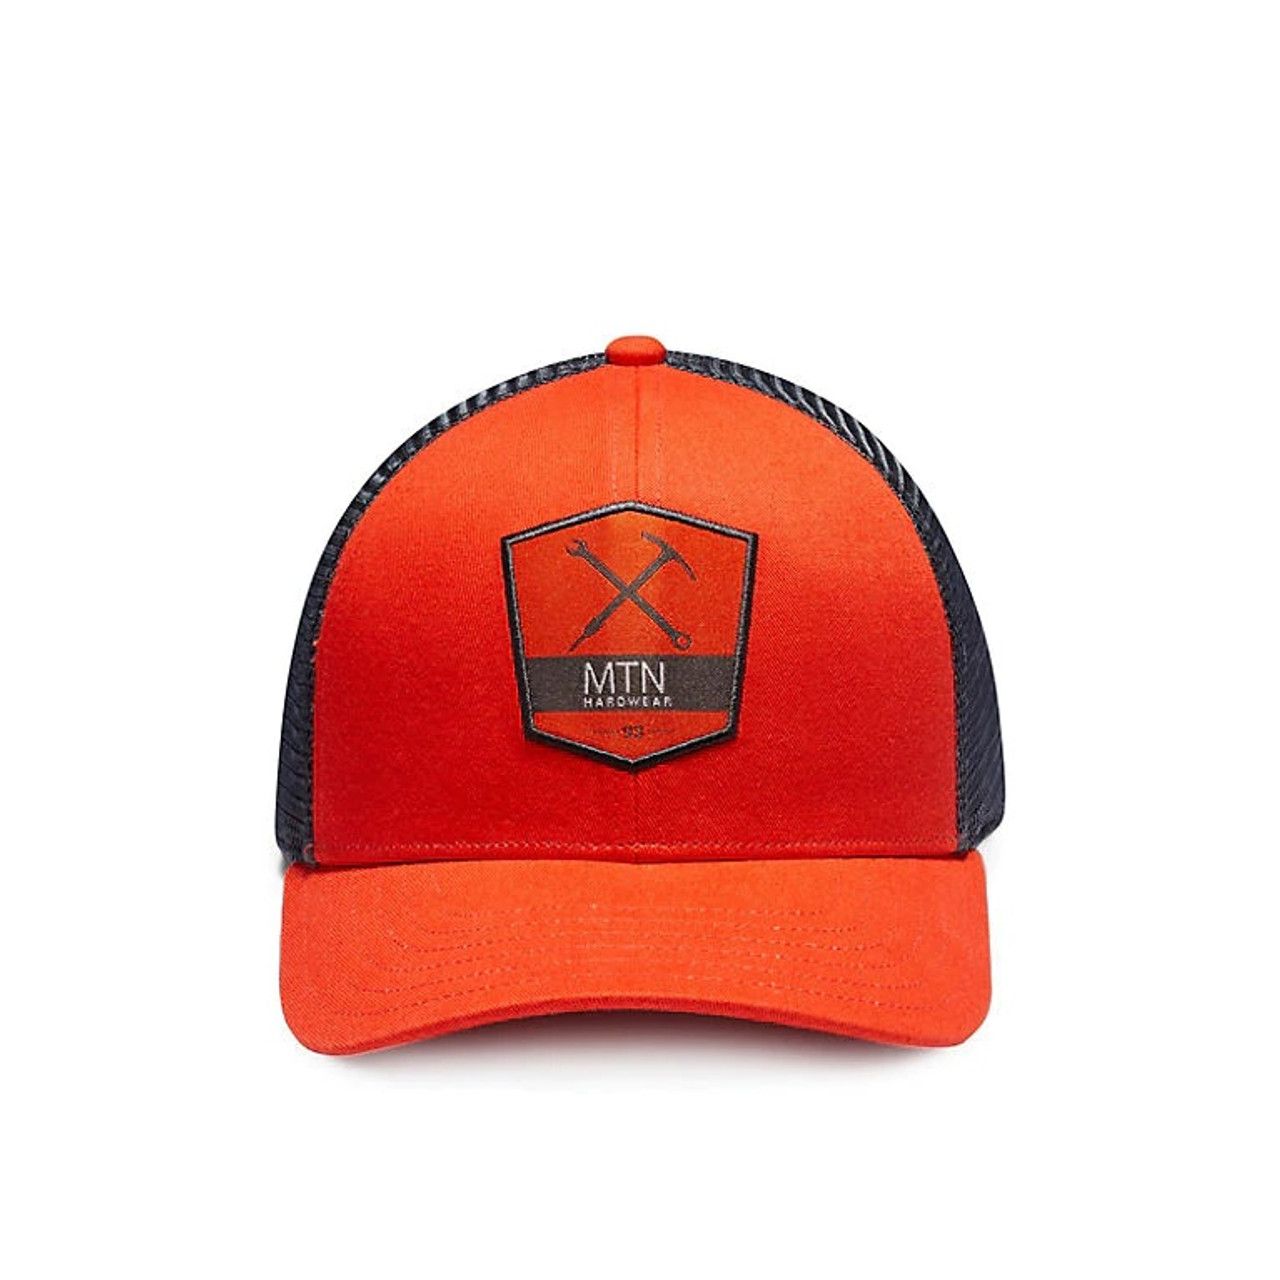 Mountain Hardwear Grail Trucker Hat State Orange Snapback